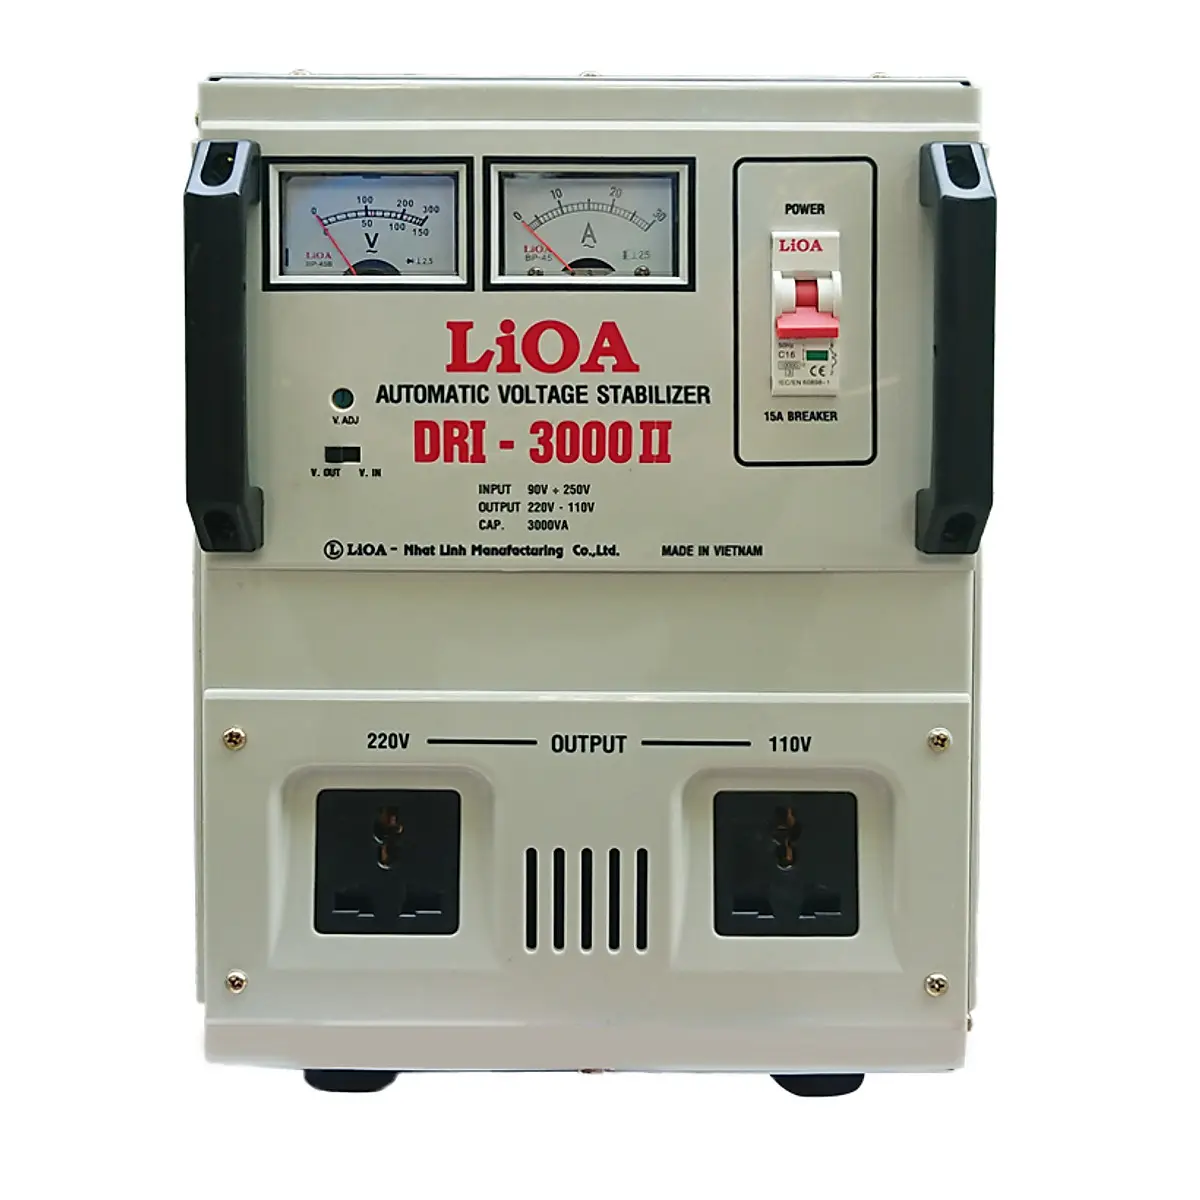 Lioa Высокое качество 1 фазный автоматический стабилизатор напряжения (DRI - 3000 II) Сделано во Вьетнаме